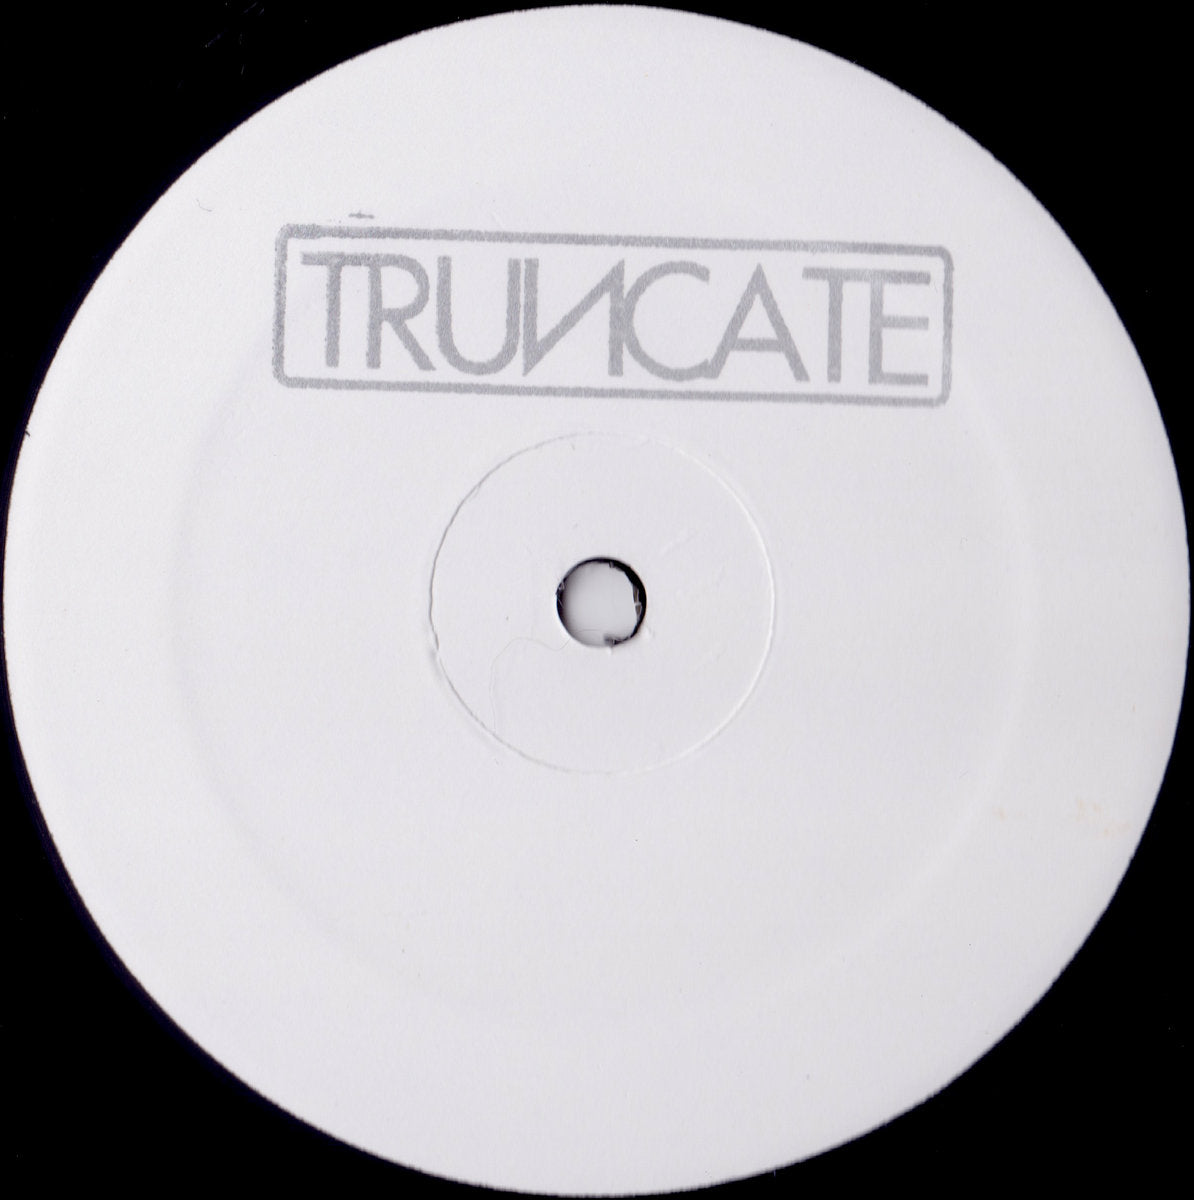 Truncate – Concentrate / Focus